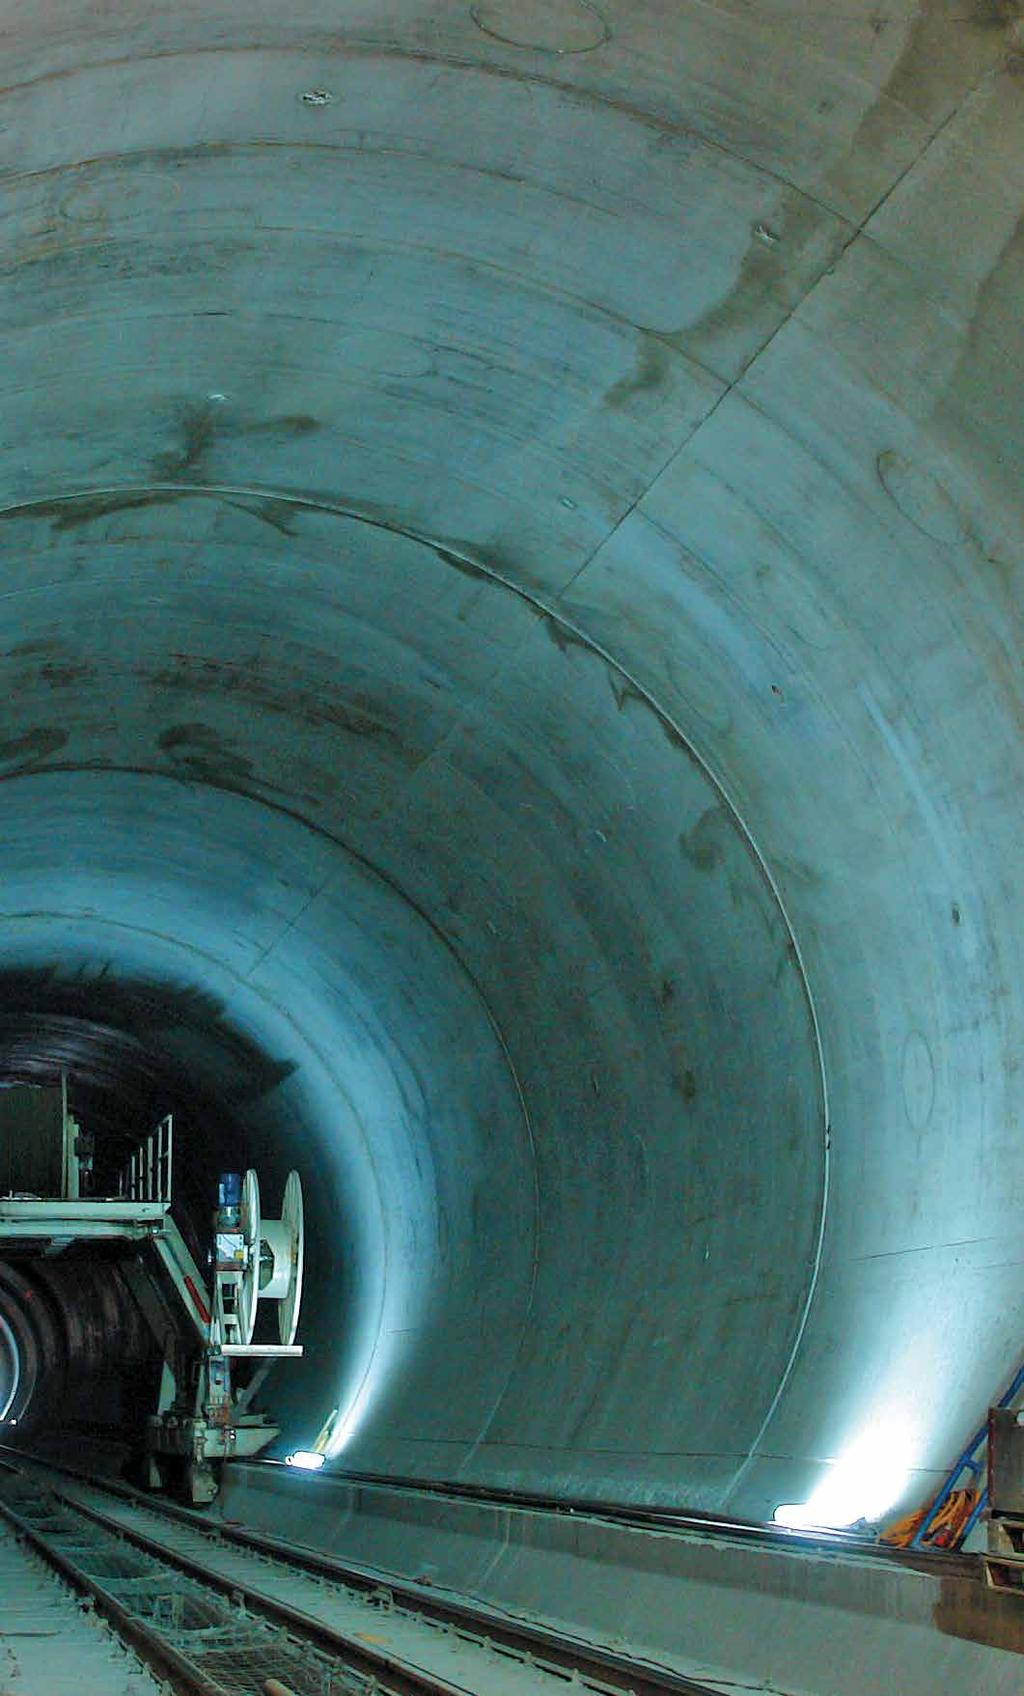 Gigantische Bauprojekte wie dasjenige des Gotthard-Basistunnels bergen enorme Risiken.